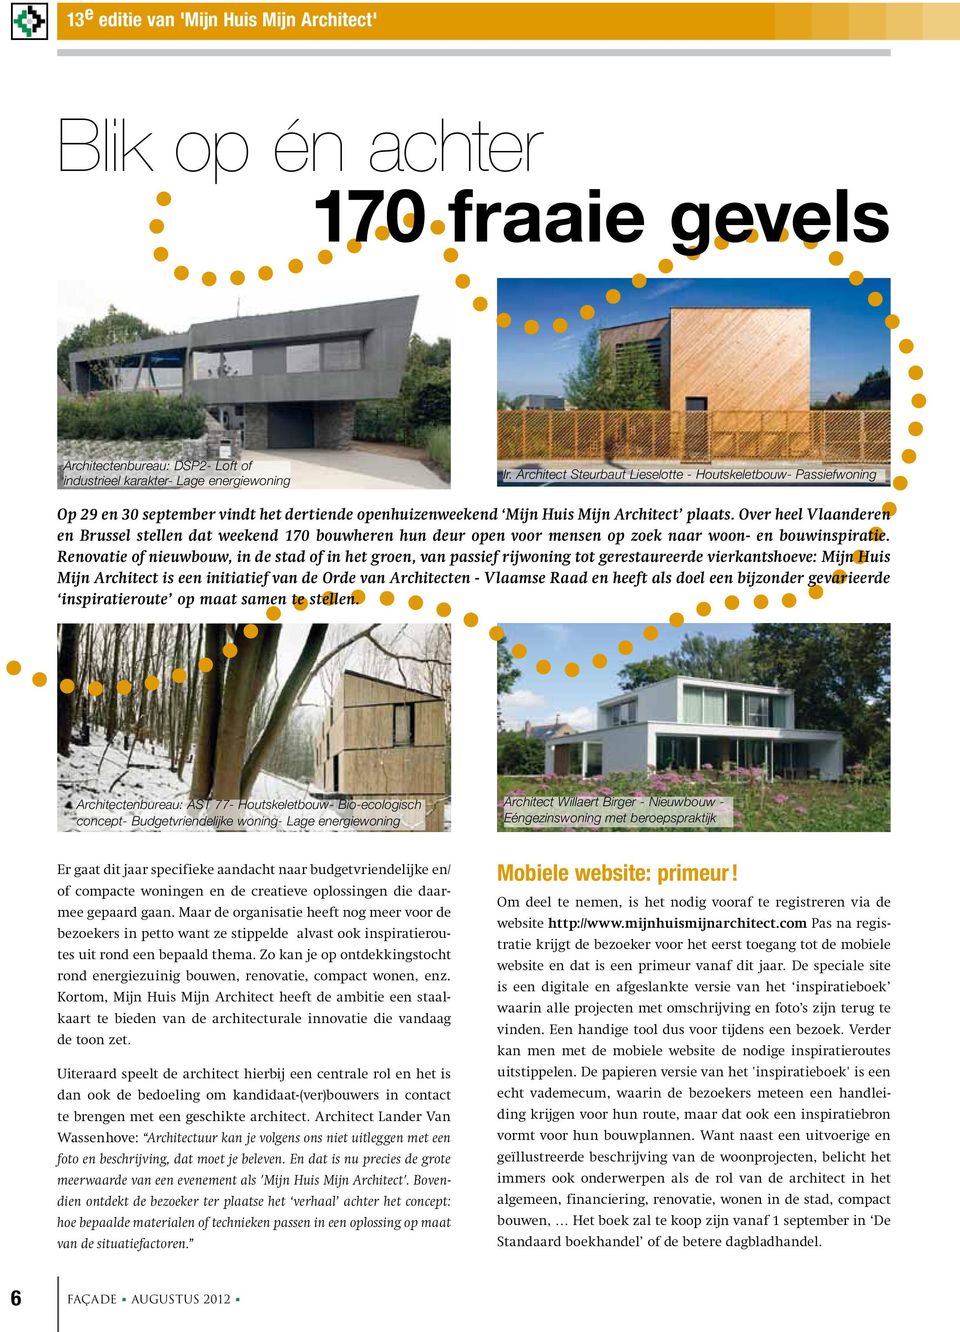 Over heel Vlaanderen en Brussel stellen dat weekend 170 bouwheren hun deur open voor mensen op zoek naar woon- en bouwinspiratie.